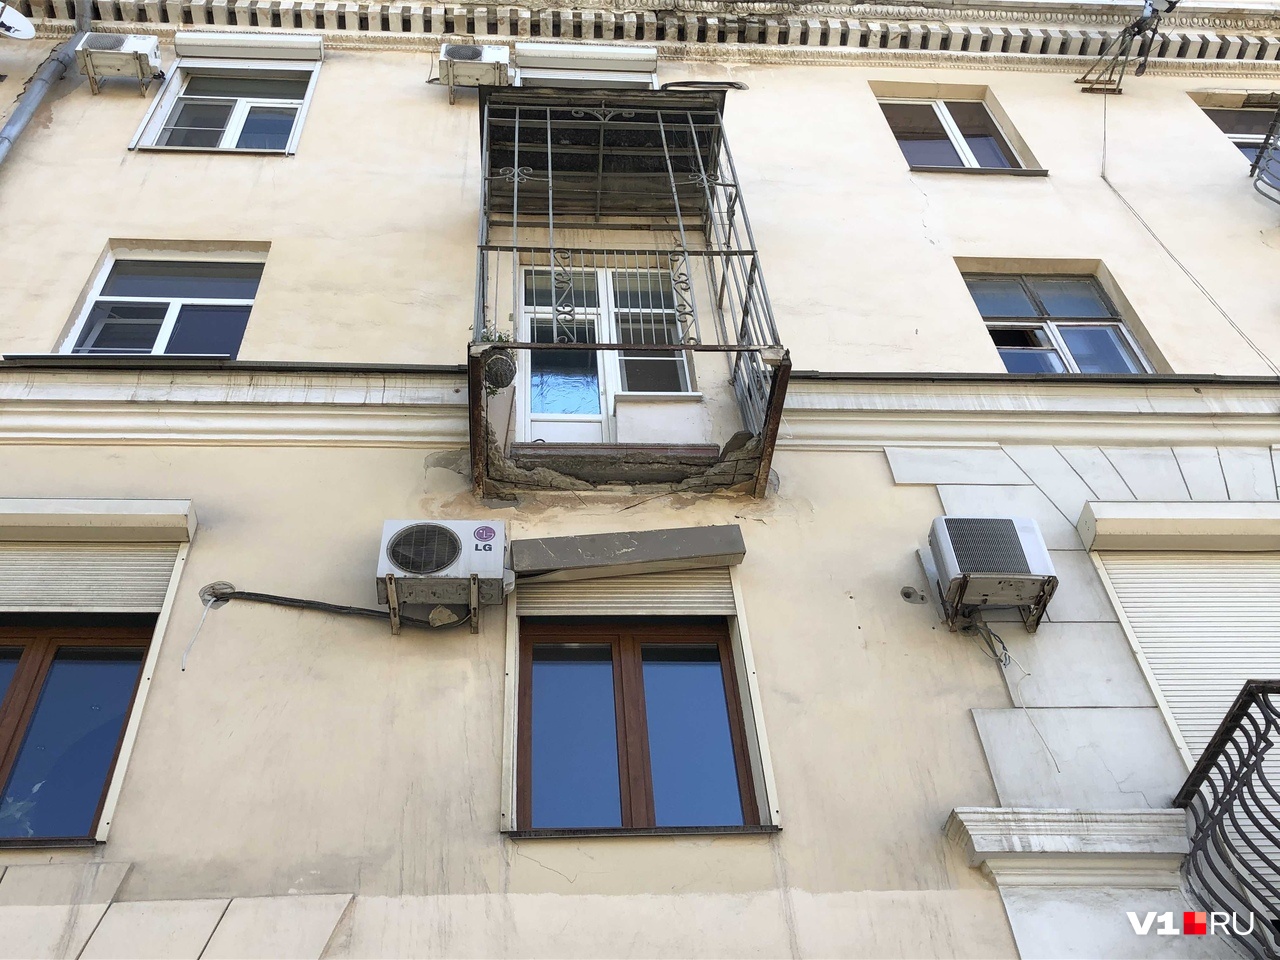 «Ждут, пока кого-нибудь убьет?»: жильцы дома с падающими балконами в центре Волгограда боятся за себя и за прохожих